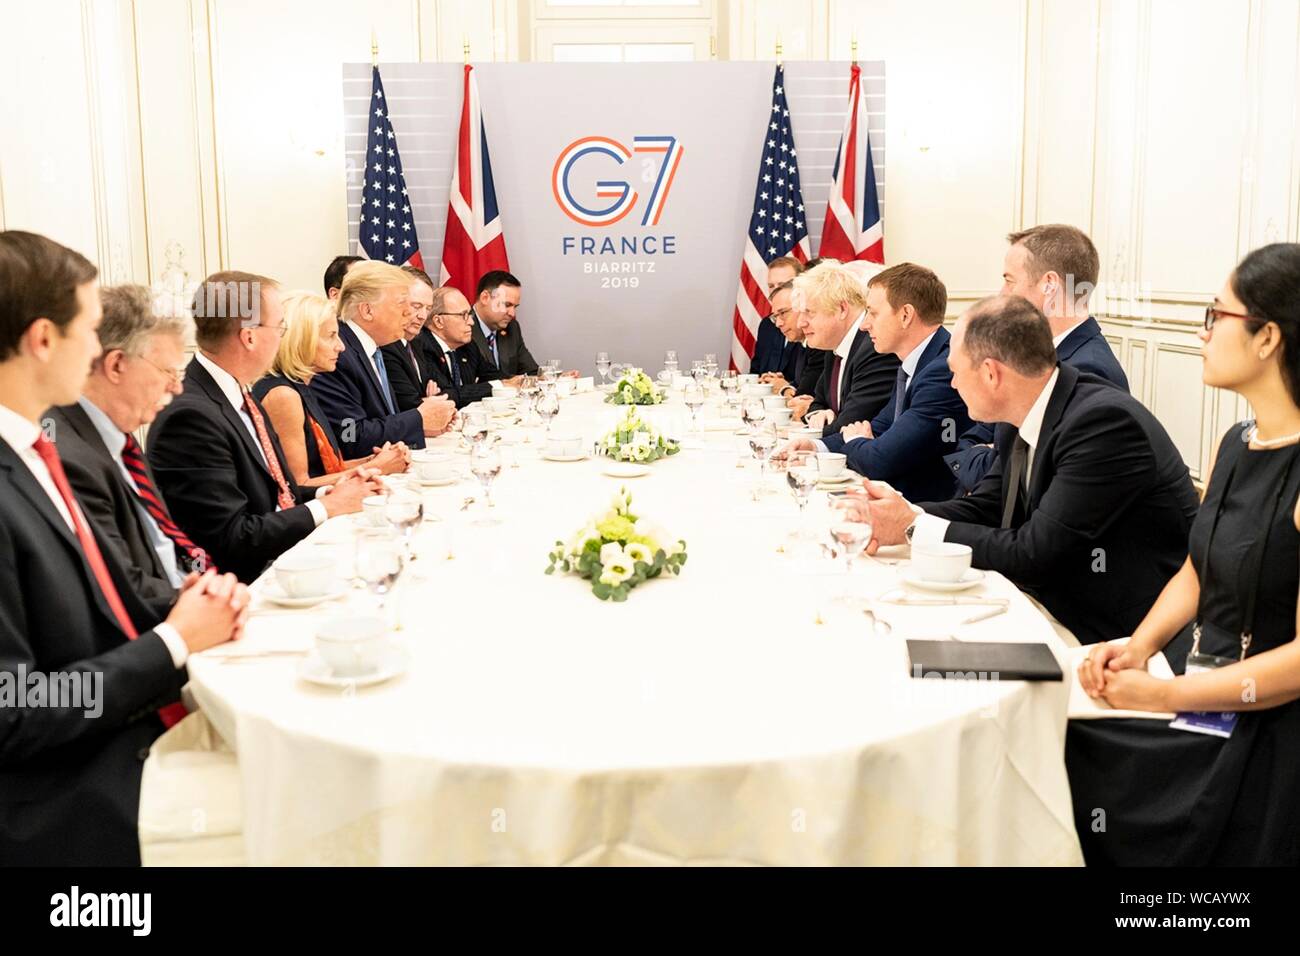 Us-Präsident Donald Trump, links, hält ein Arbeitsfrühstück mit dem britischen Premierminister Boris Johnson und ihre Delegationen am Rande des G7-Gipfels im Hotel du Palais Biarritz August 25, 2019 in Biarritz, Frankreich. Stockfoto